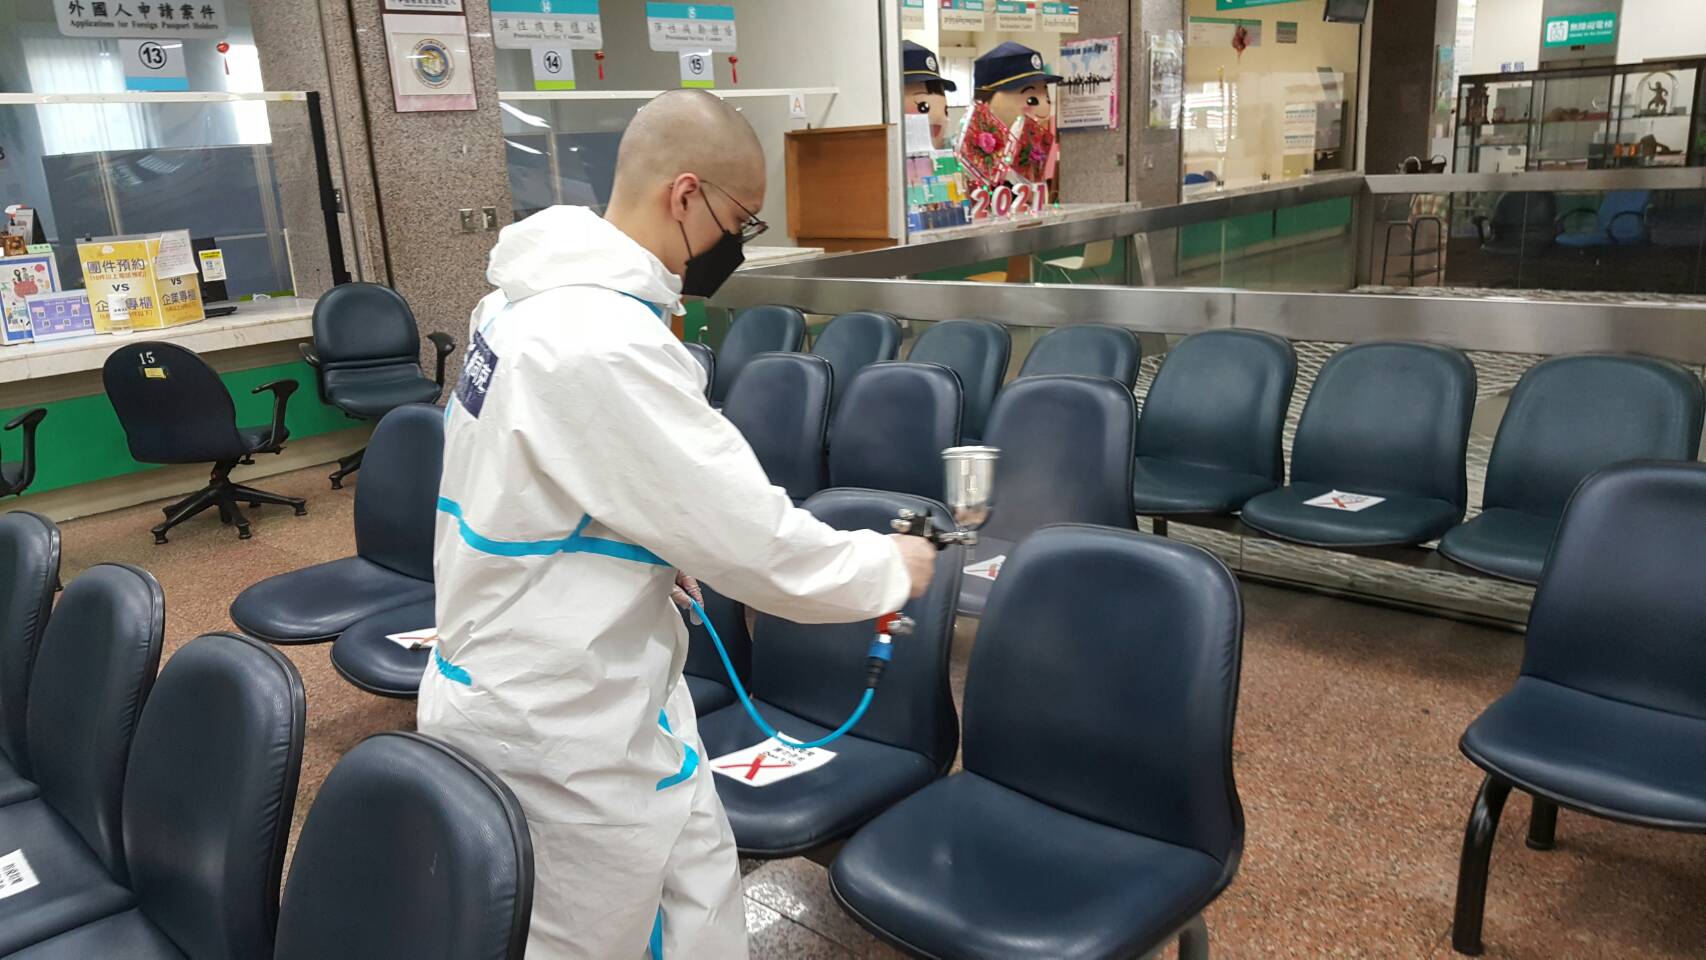 ไต้หวัน เคลแมกซ์ บจก. ได้มอบสารเคลือบต้านไวรัสเกรดนาโนเทคโนโลยีของญี่ปุ่น ให้กับตัวแทนเพื่อช่วยฆ่าเชื้อในสถานีบริการในเมืองไทเป  รูปภาพ/โดย สถานีบริการไทเป